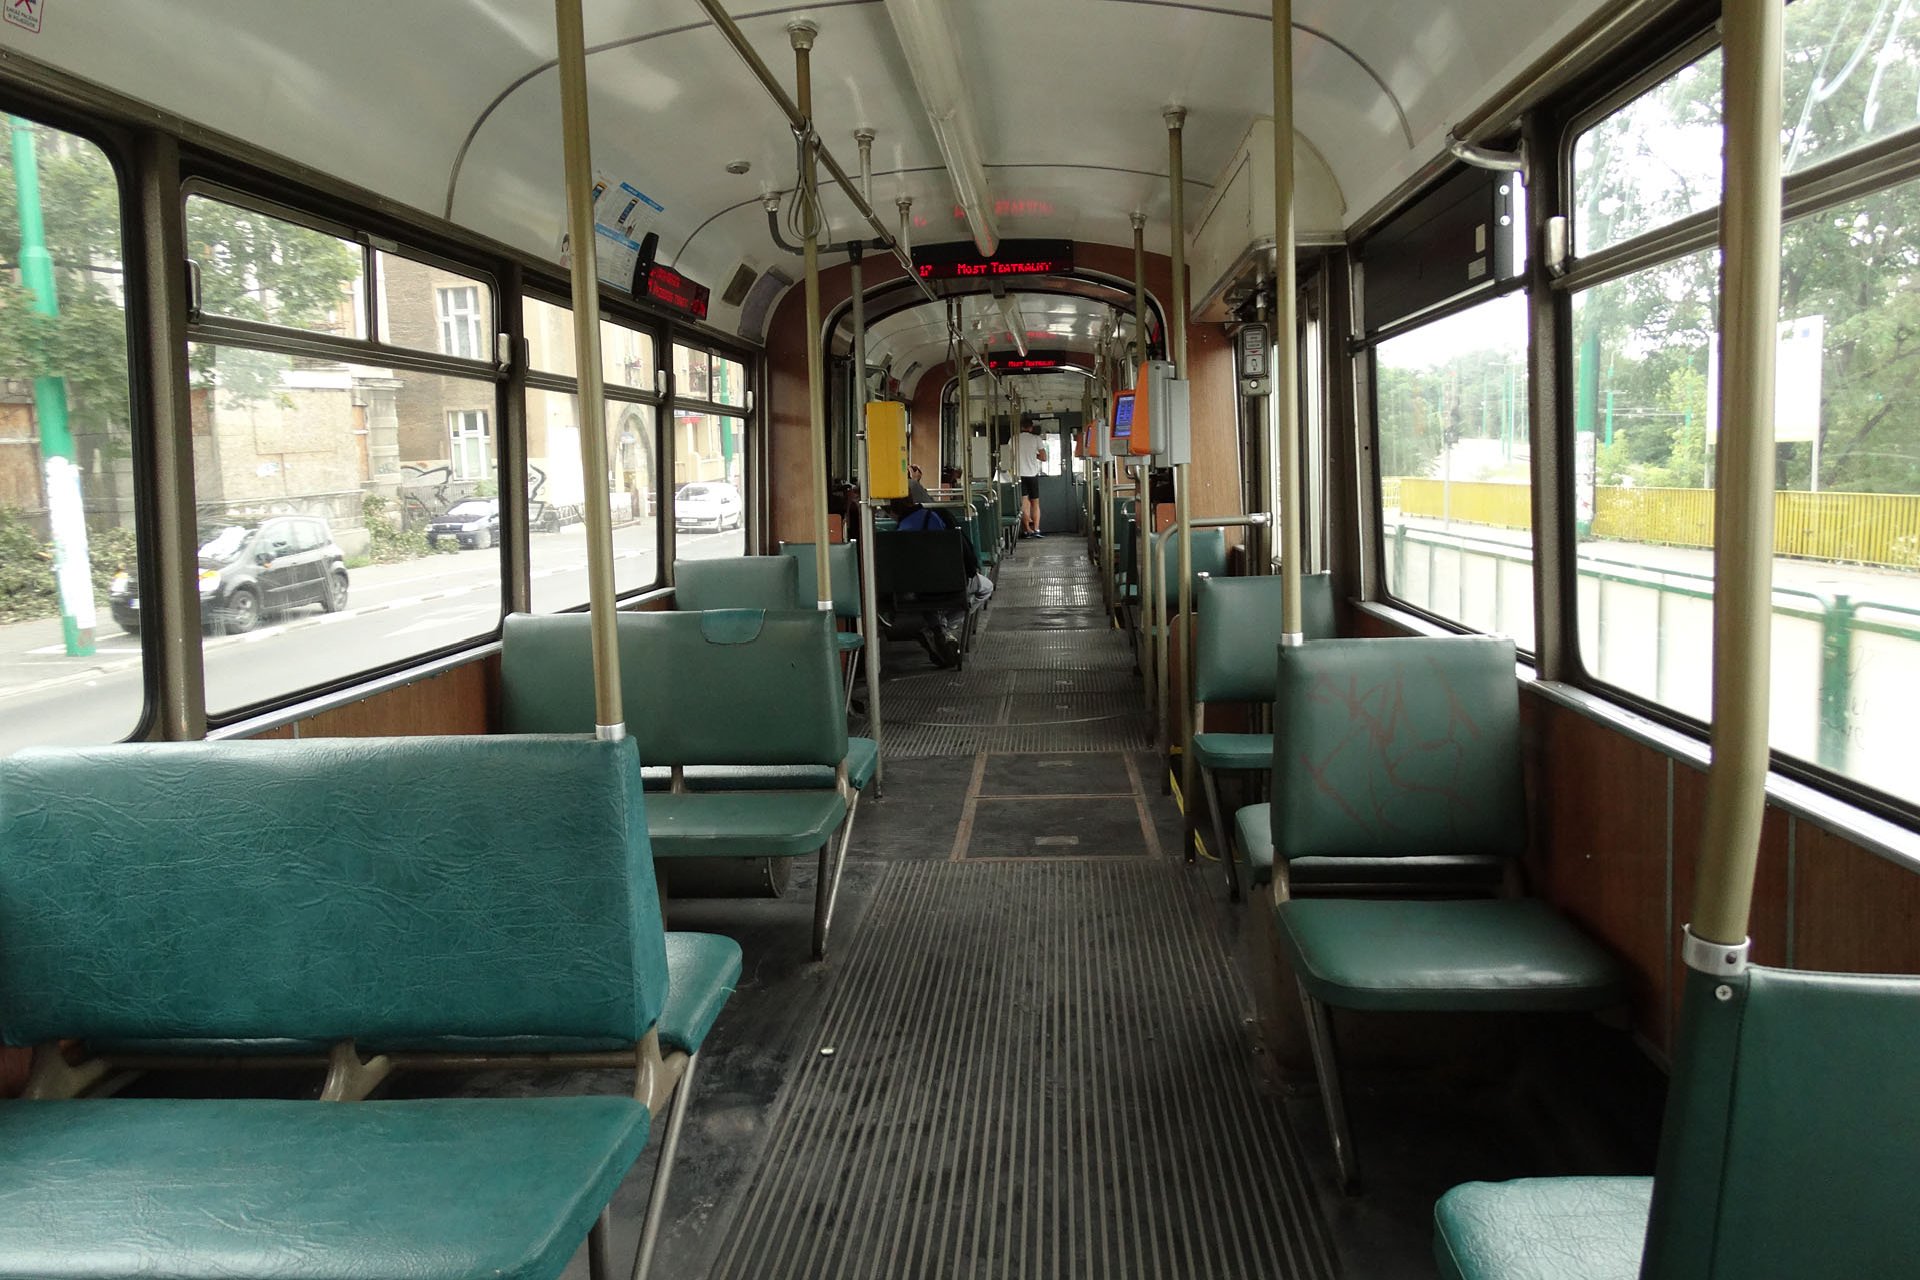 GT8 710 moderne Anzeigen in der doch recht betagten Straßenbahn. modern displays in this old tram.